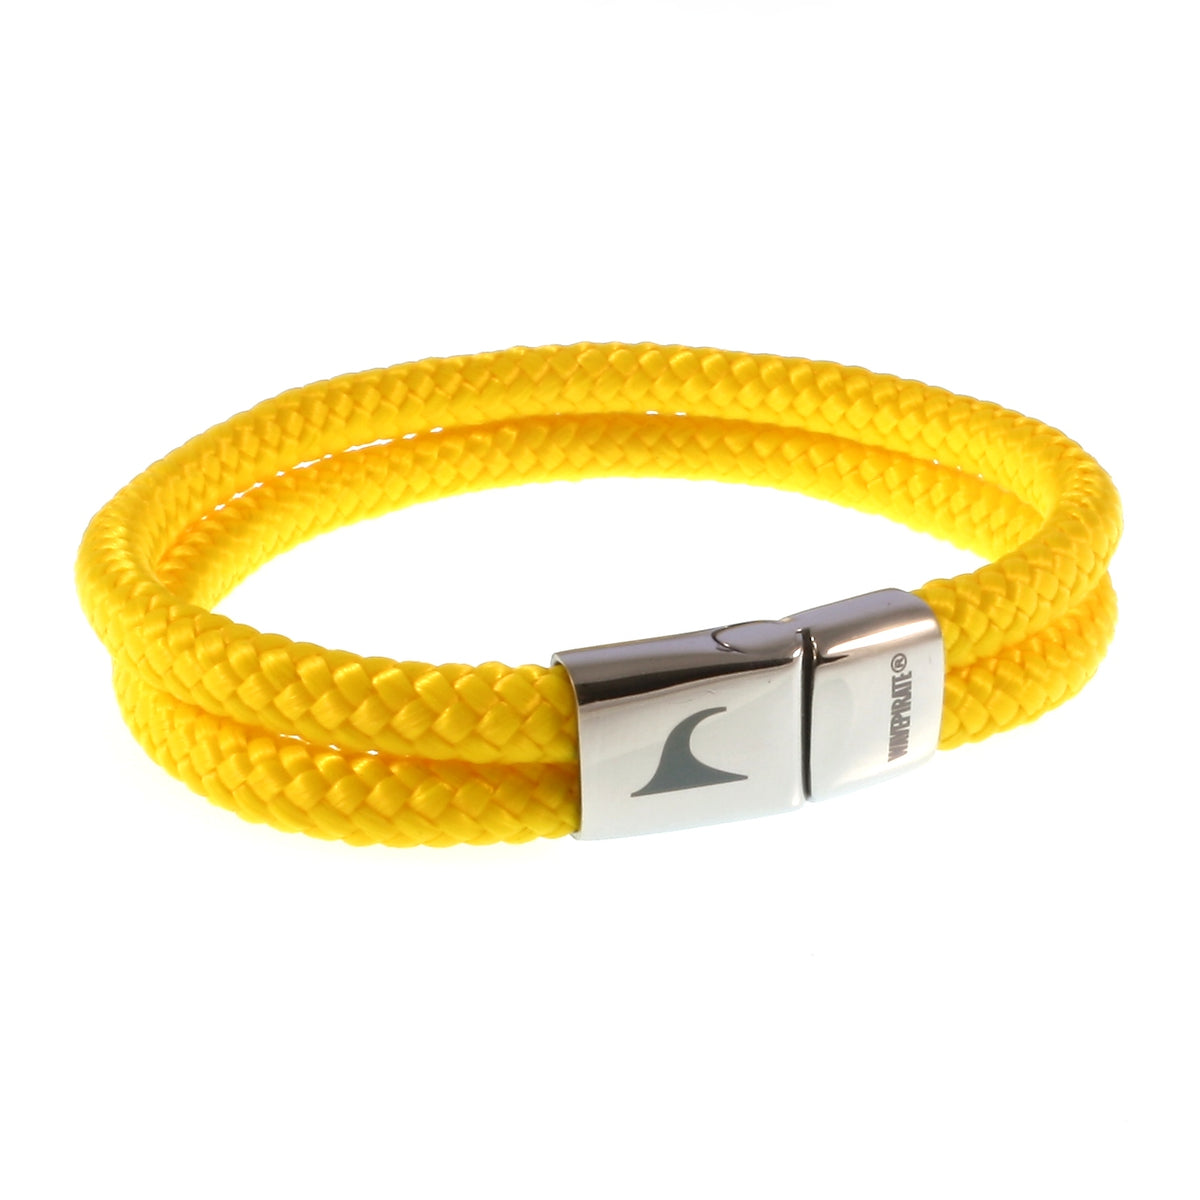 Herren-Segeltau-Armband-Tarifa-gelb-geflochten-Edelstahlverschluss-vorn-wavepirate-shop-st